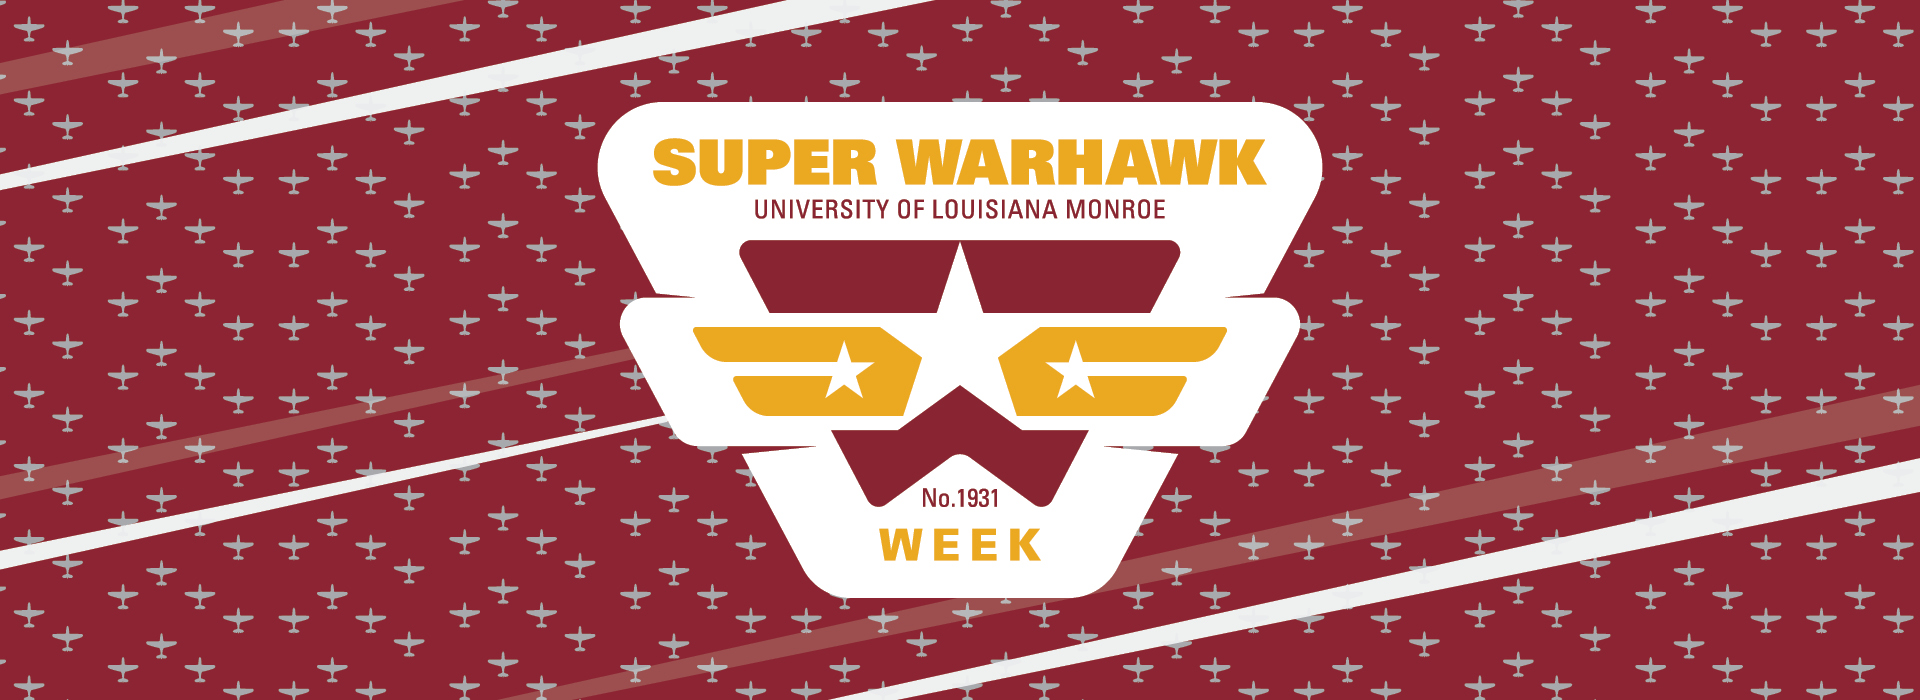  Super Warhawk Week banner